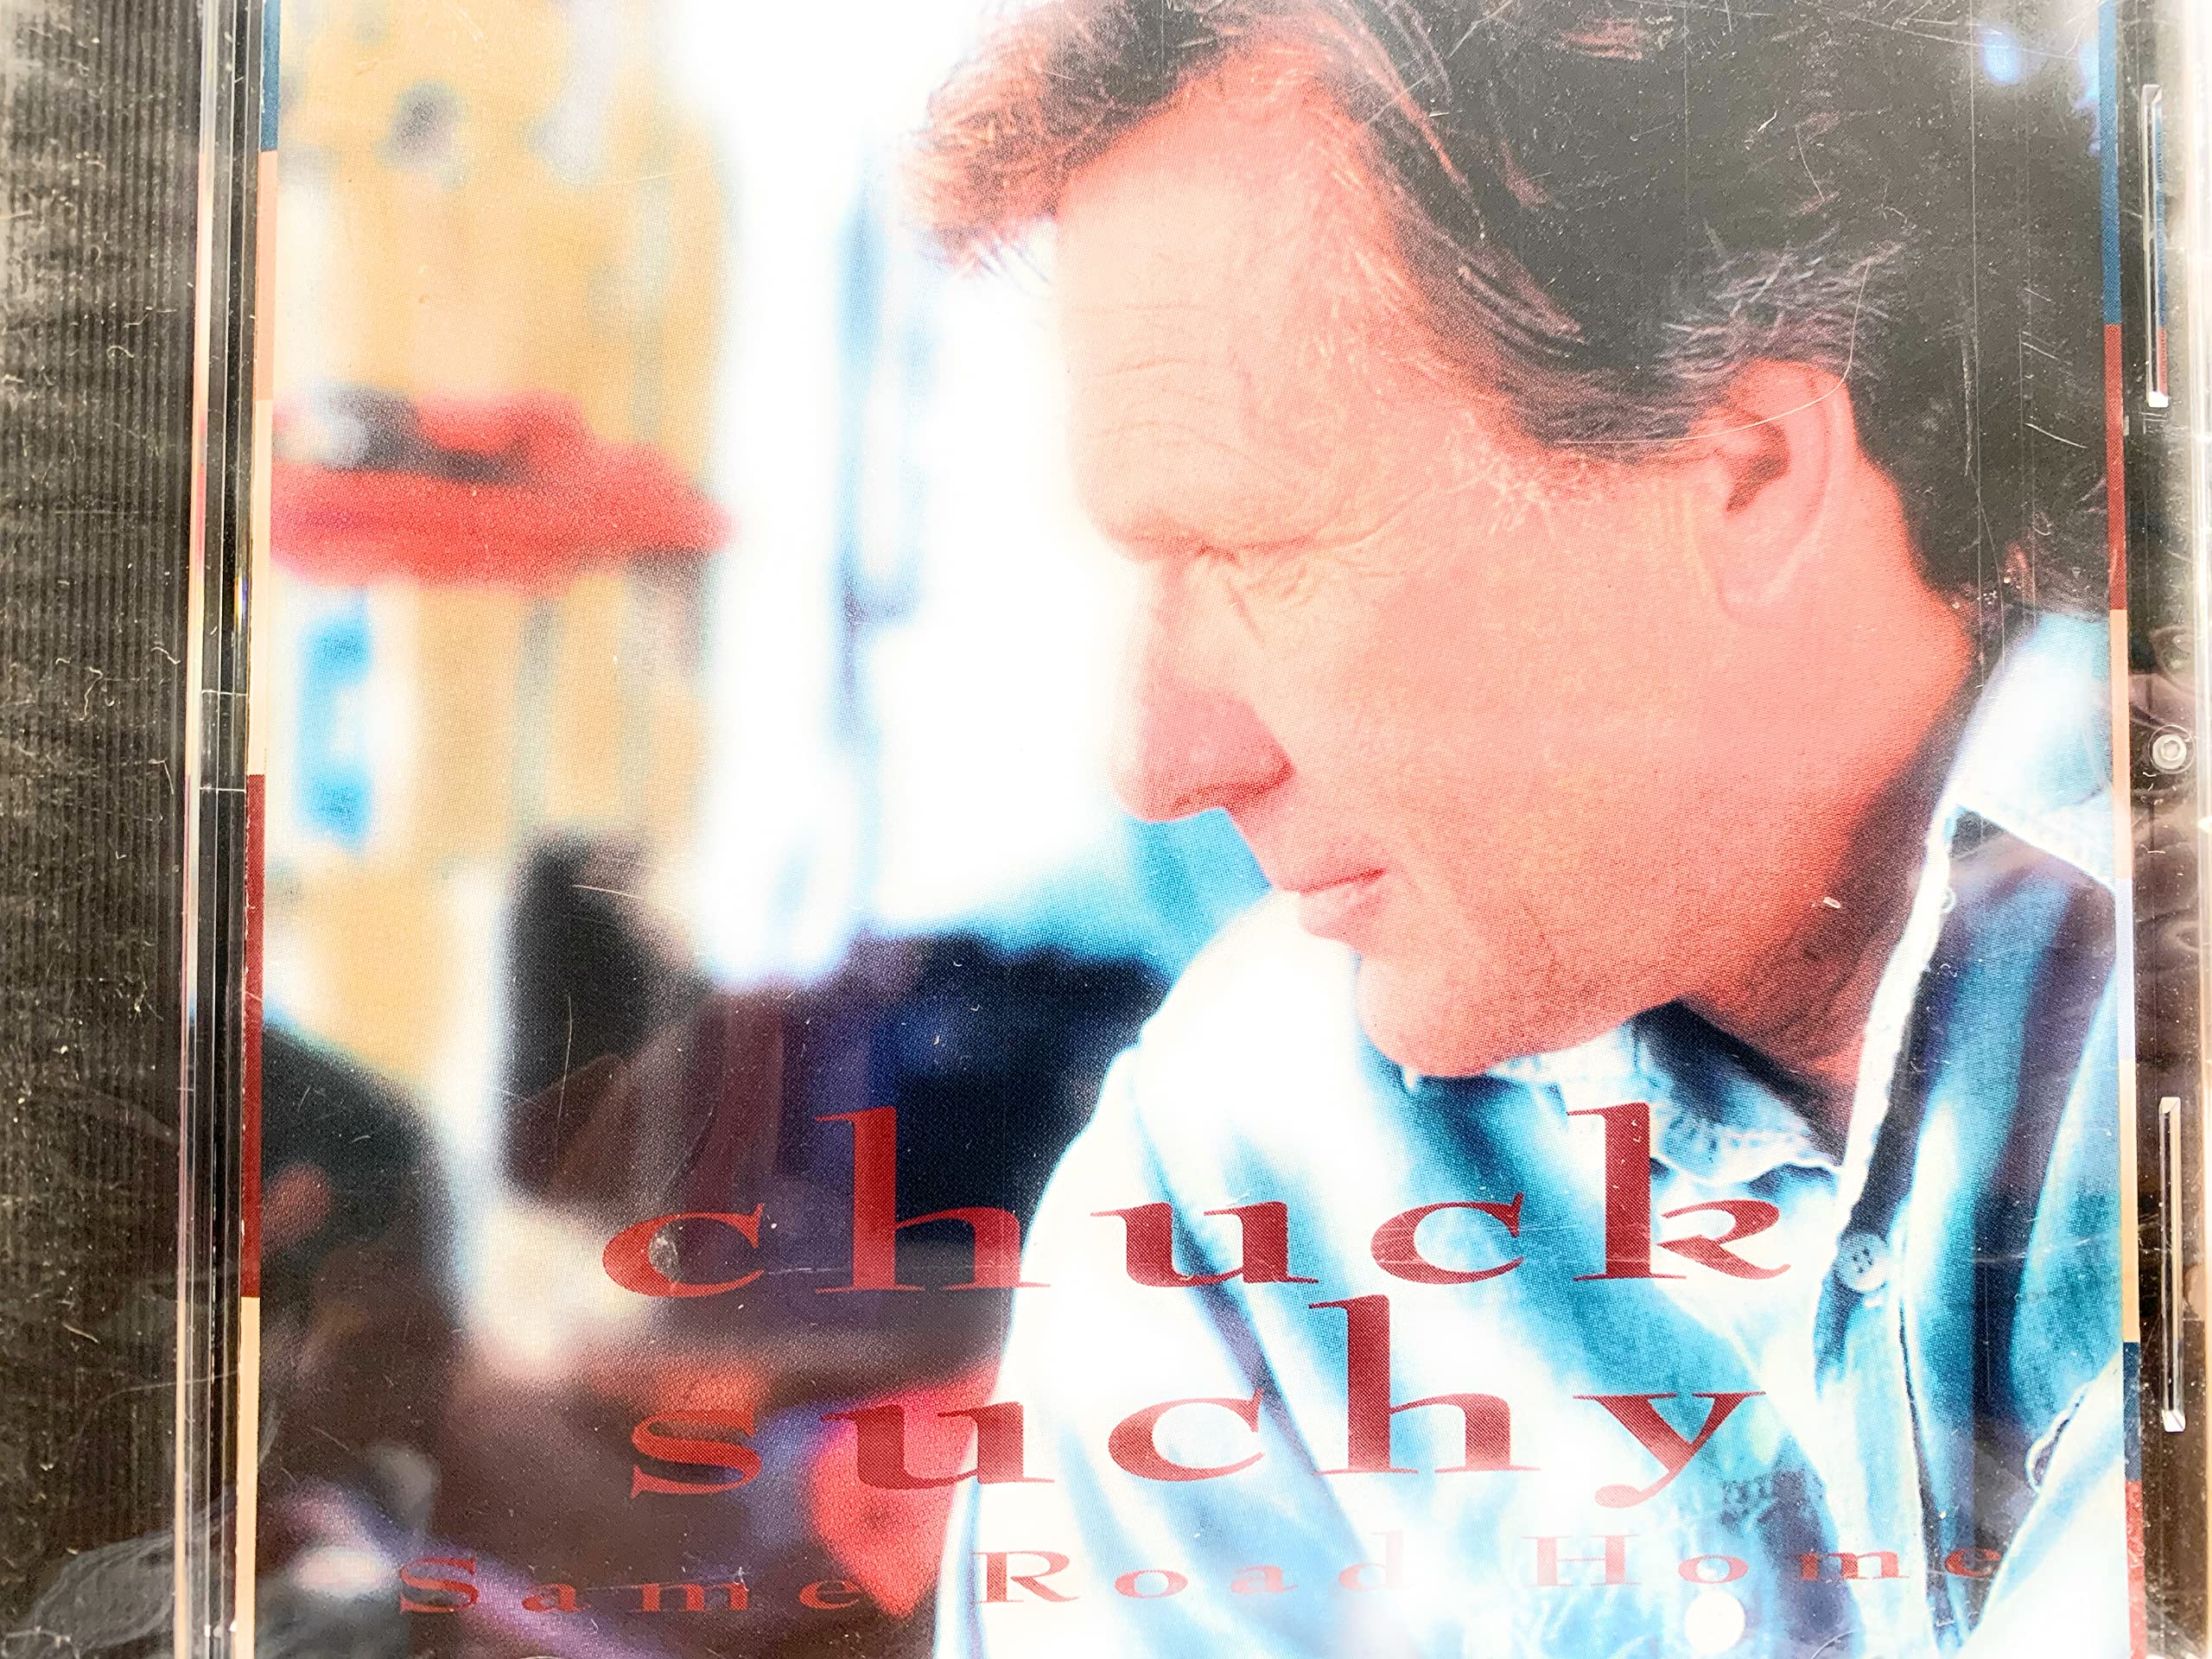 Chuck Suchy-Same Road Home-CD-FLAC-1996-FLACME